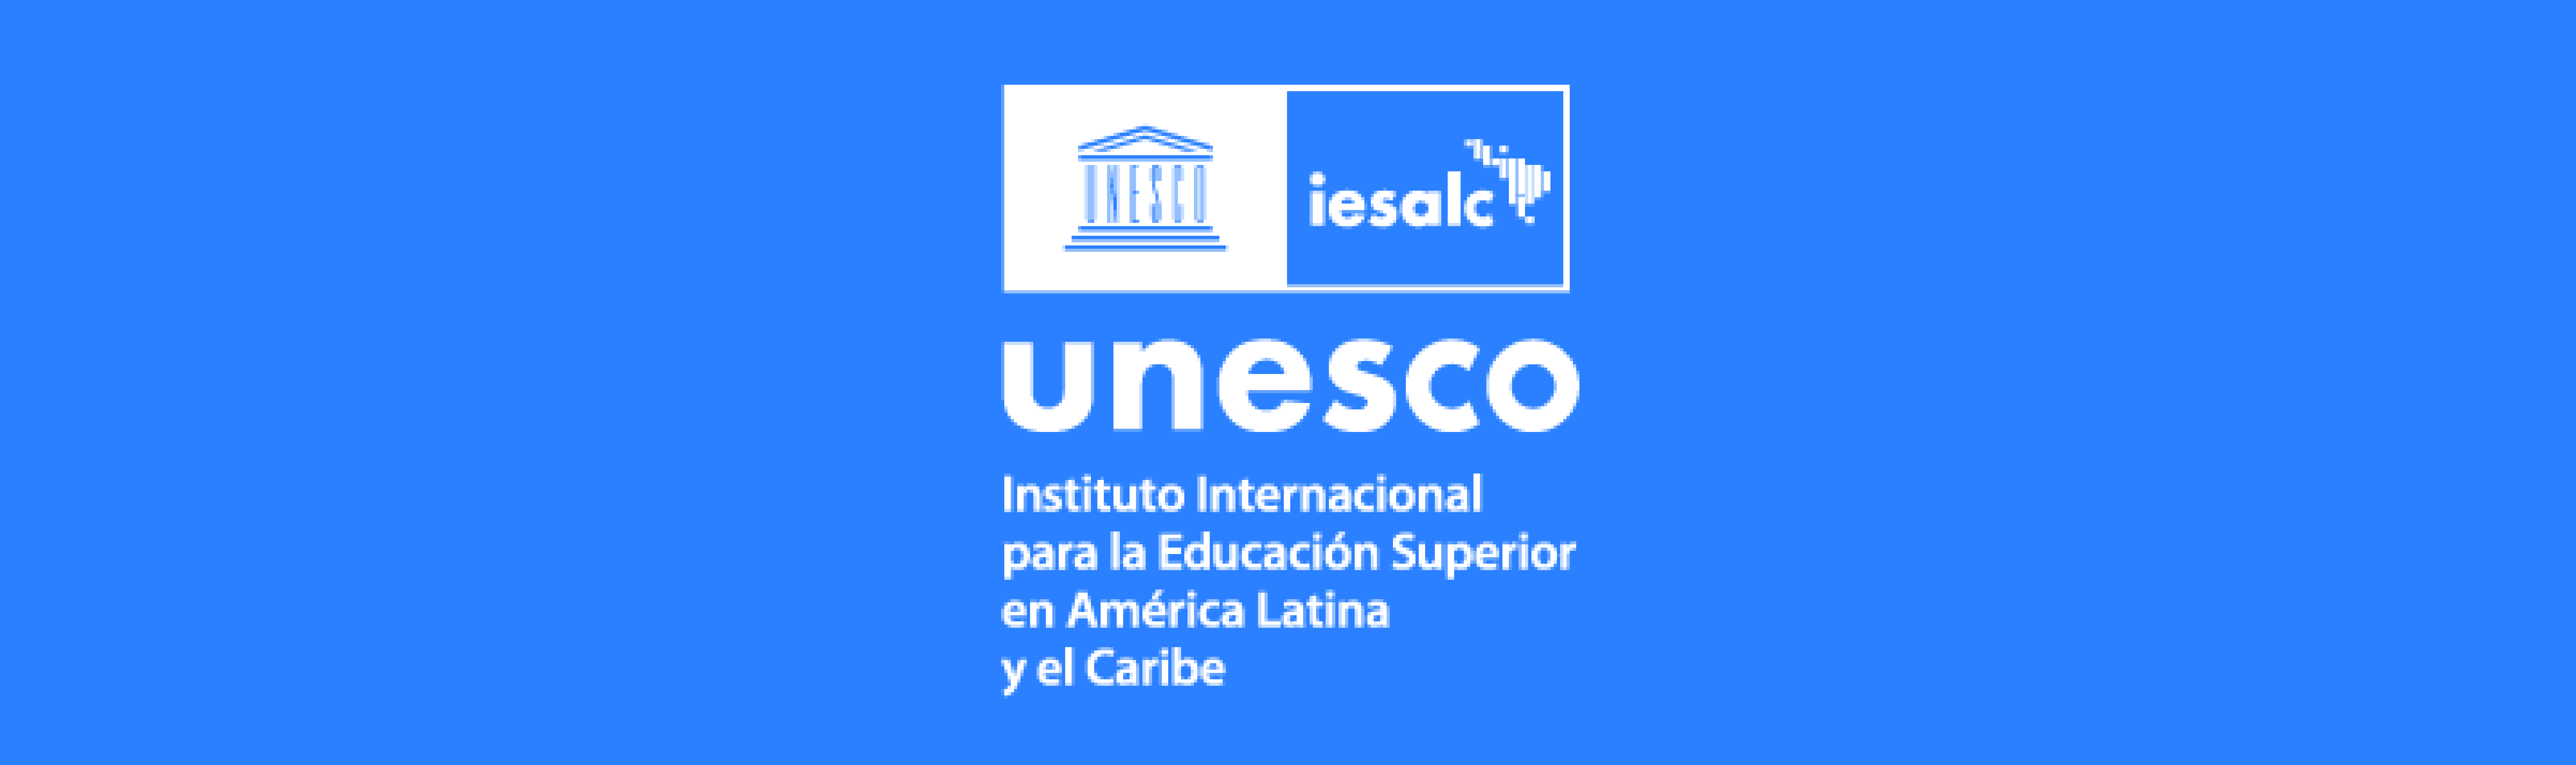 Convocatoria para Revista de Educación Superior y Sociedad UNESCO